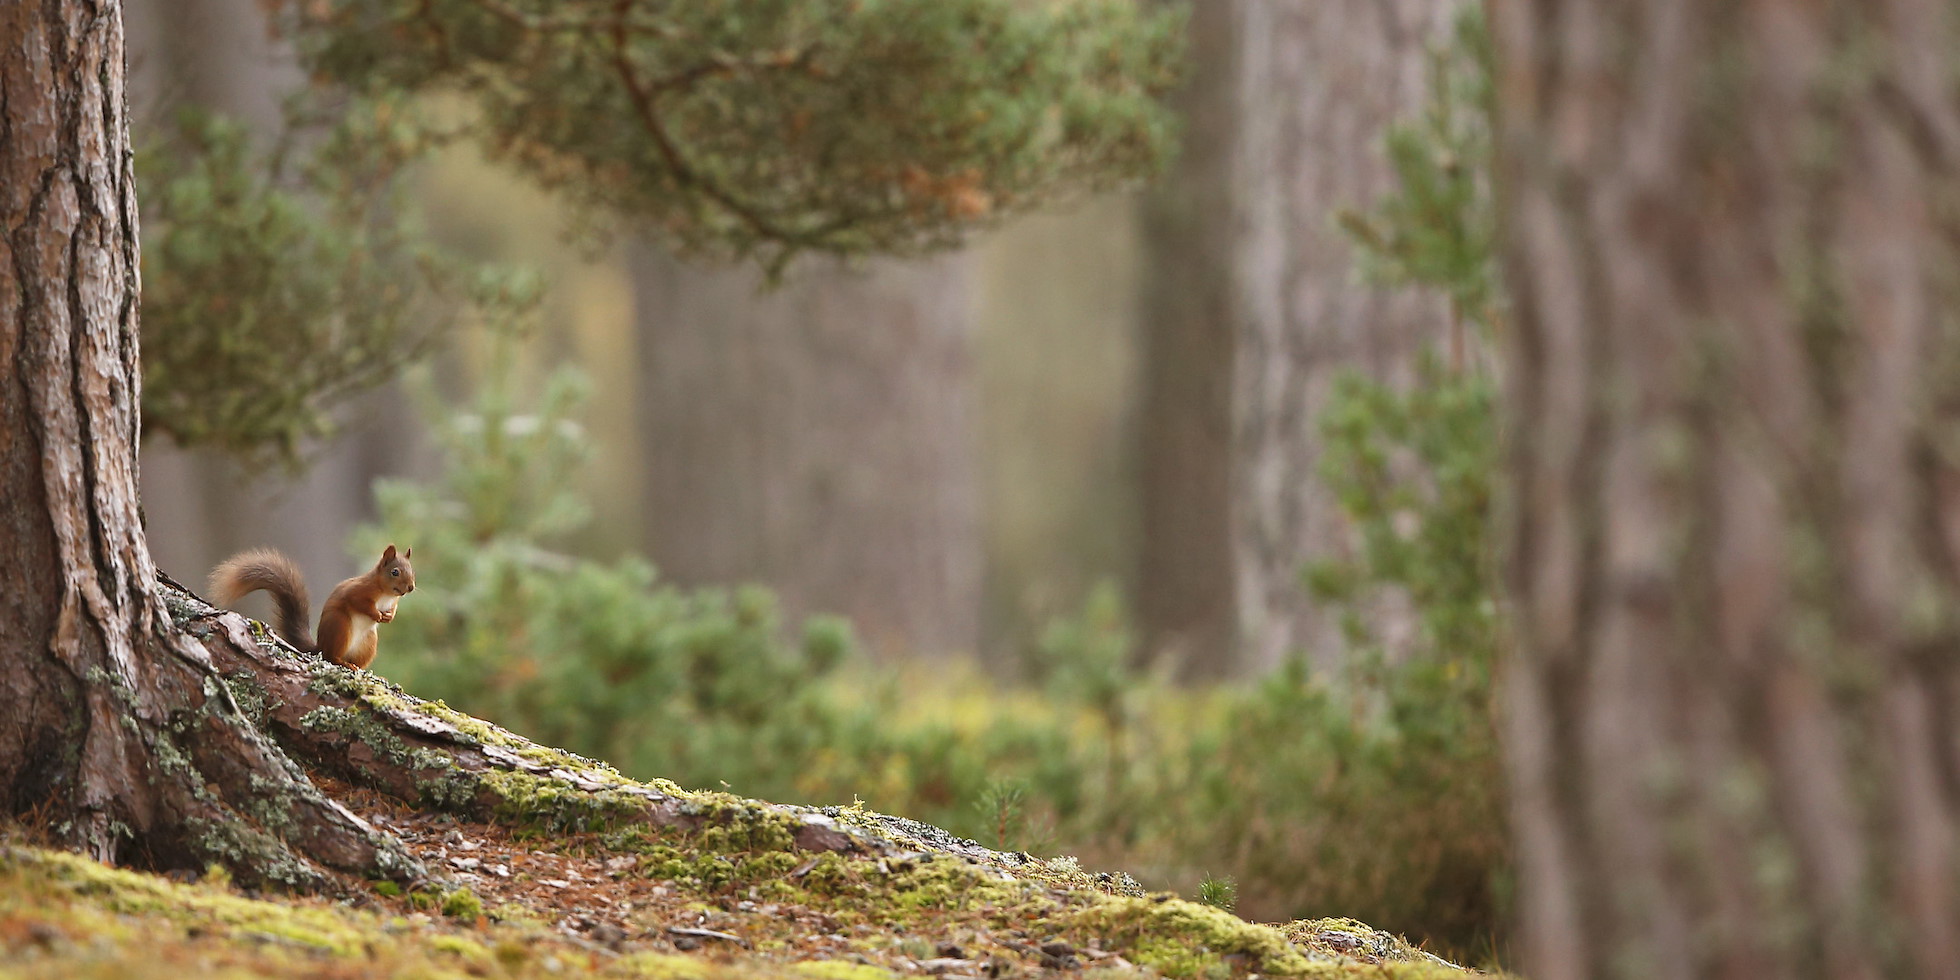 Red Squirrel (Sciurus vulgaris) in mature pine forest habitat; in the Cairngorms National Park, Scotland, UK